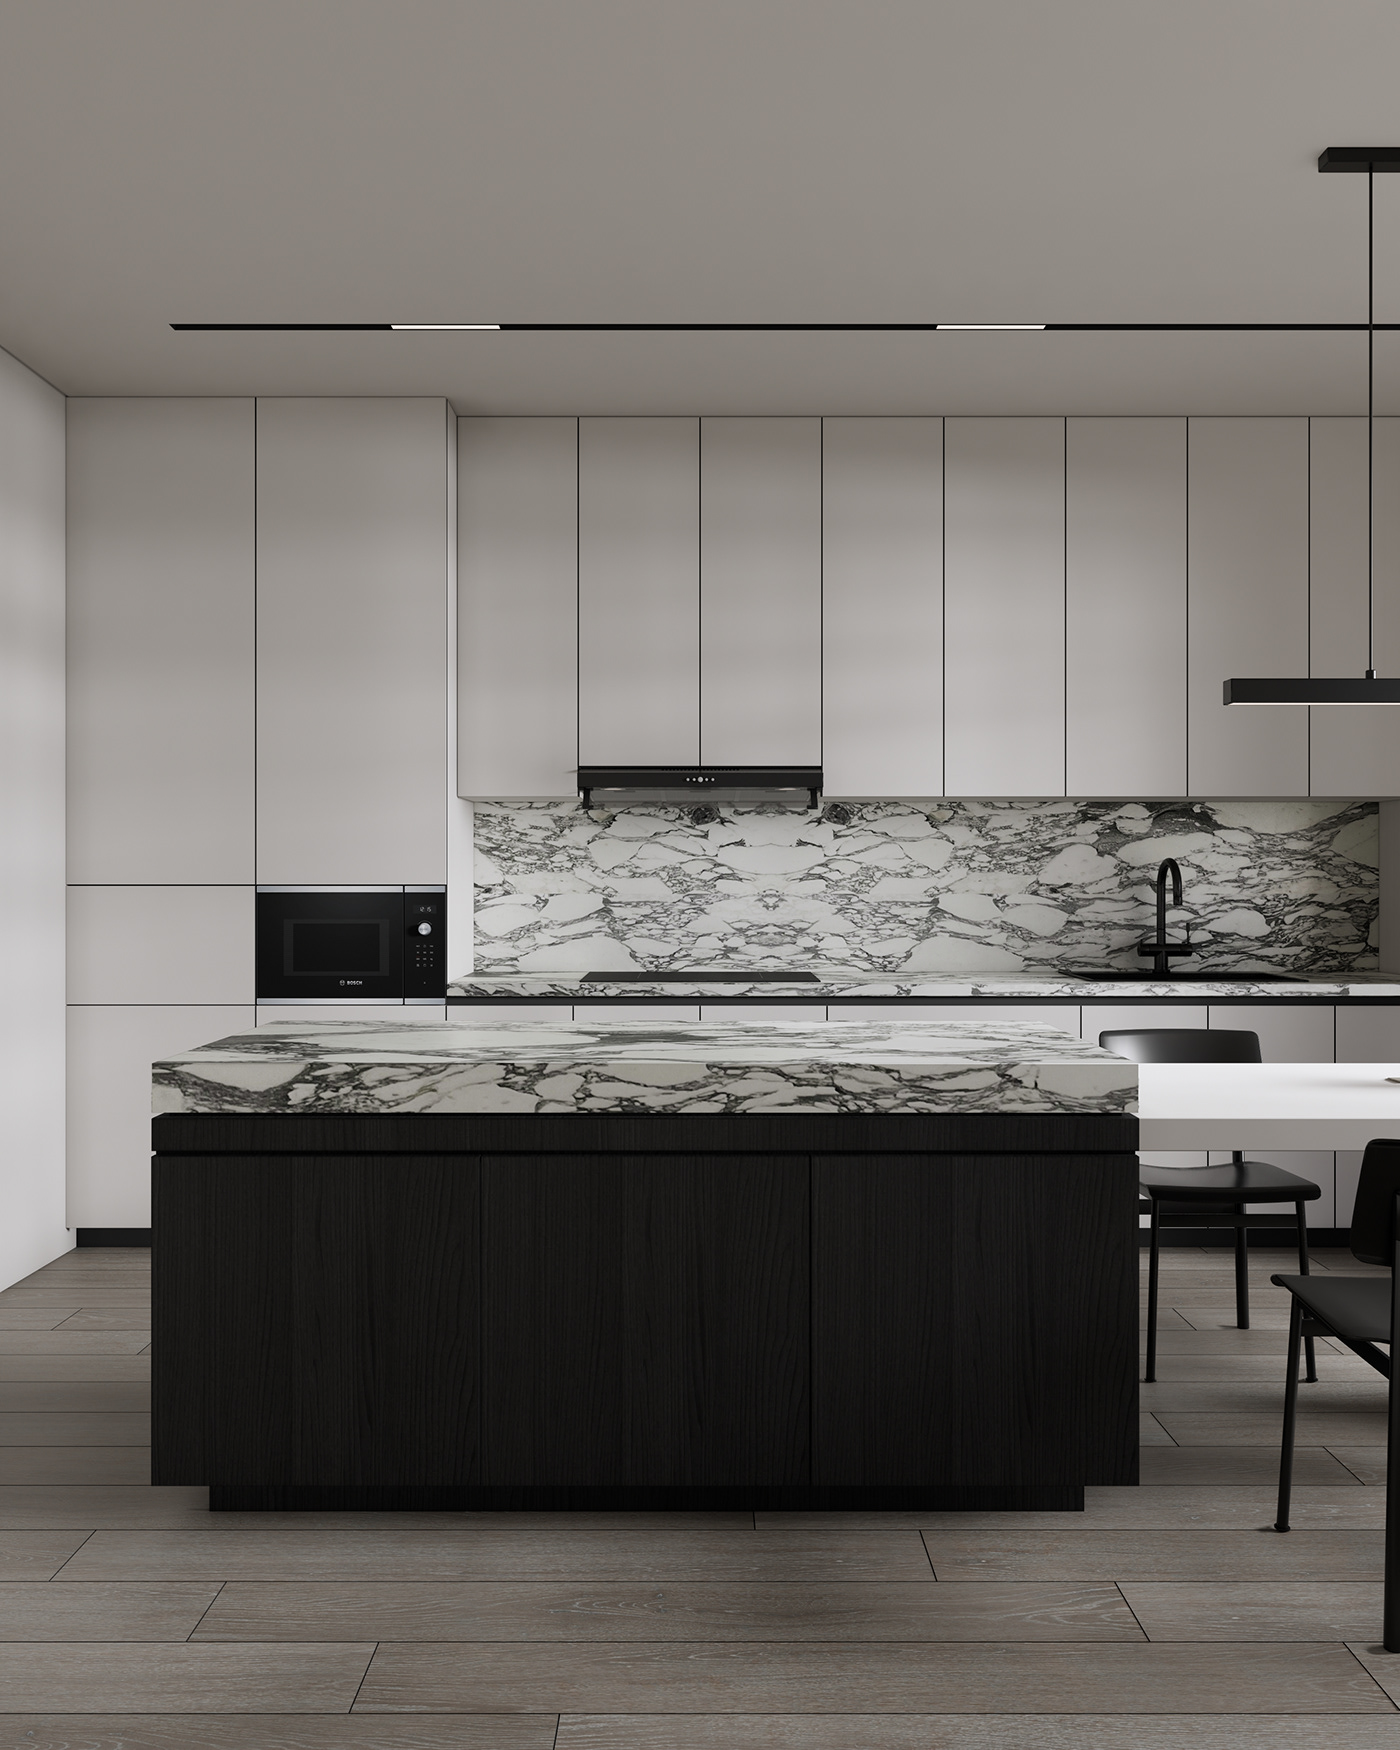 Interior interior design  kitchen dining room minimalist modern architecture visualization Render